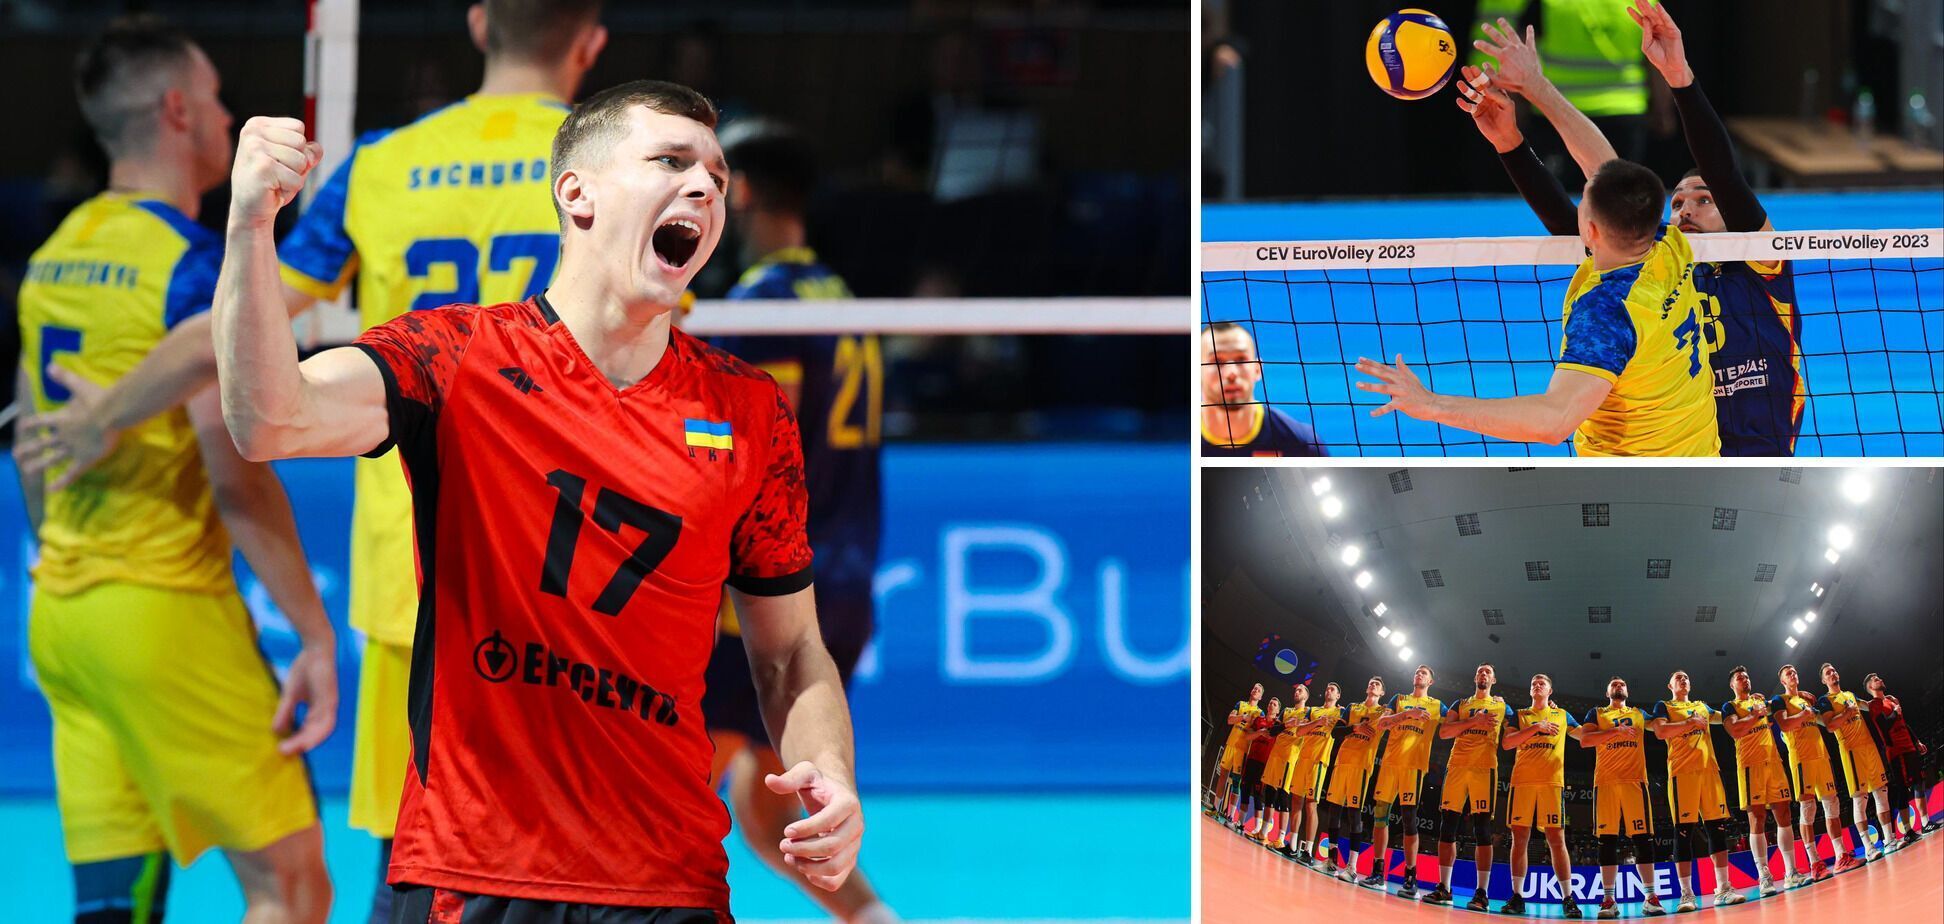 Ukraina awansowała do ćwierćfinału mistrzostw Europy w siatkówce dzięki miażdżącemu zwycięstwu